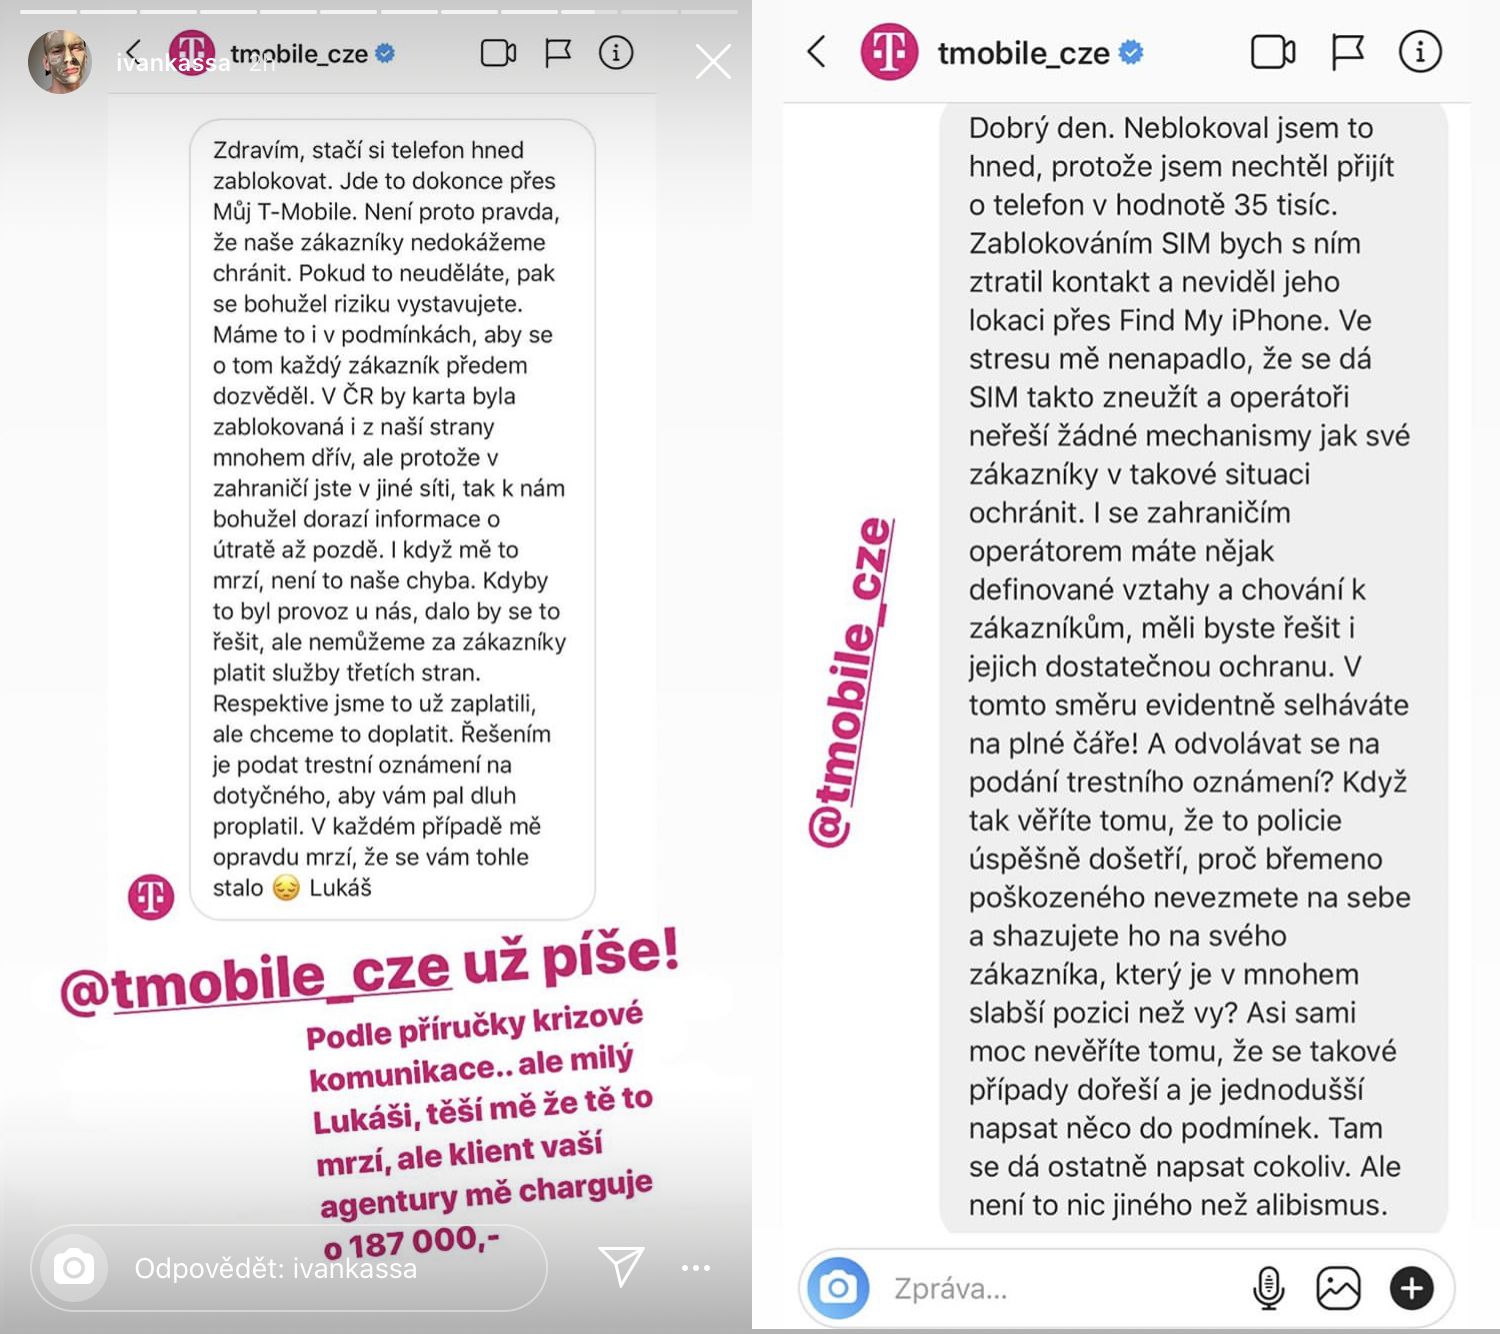 Českému fotografovi ukradli mobil a provolali statisíce. T-Mobile po něm vymáhá peníze, podvodům prý ale nijak nezabránil